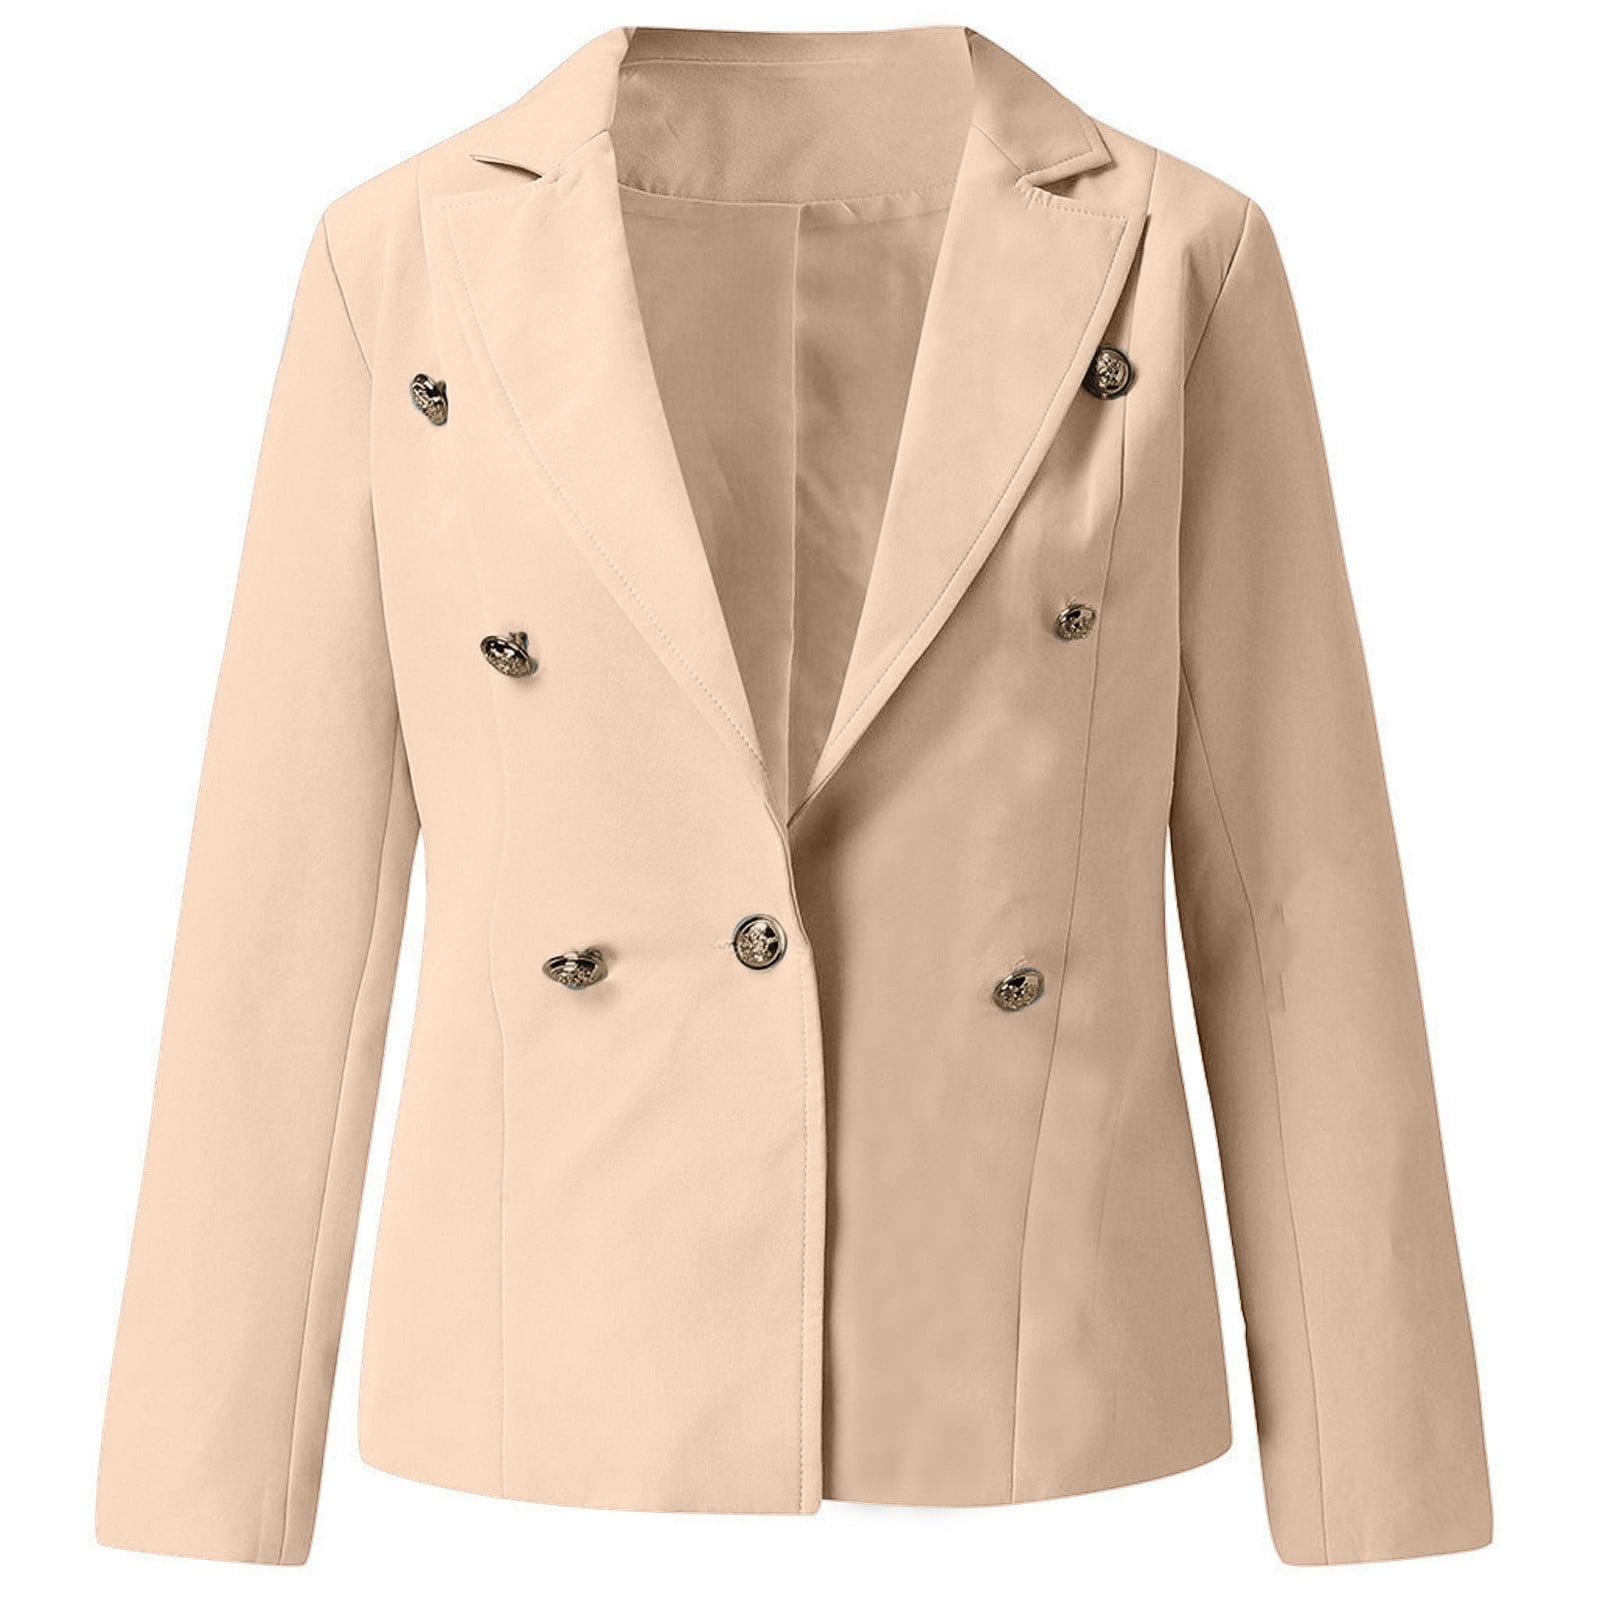 Faux Jacket for Women's Fashion Long Sleeve Lapel Motor Biker Punk Casual Cropped Coat Outwear - Walmart.com